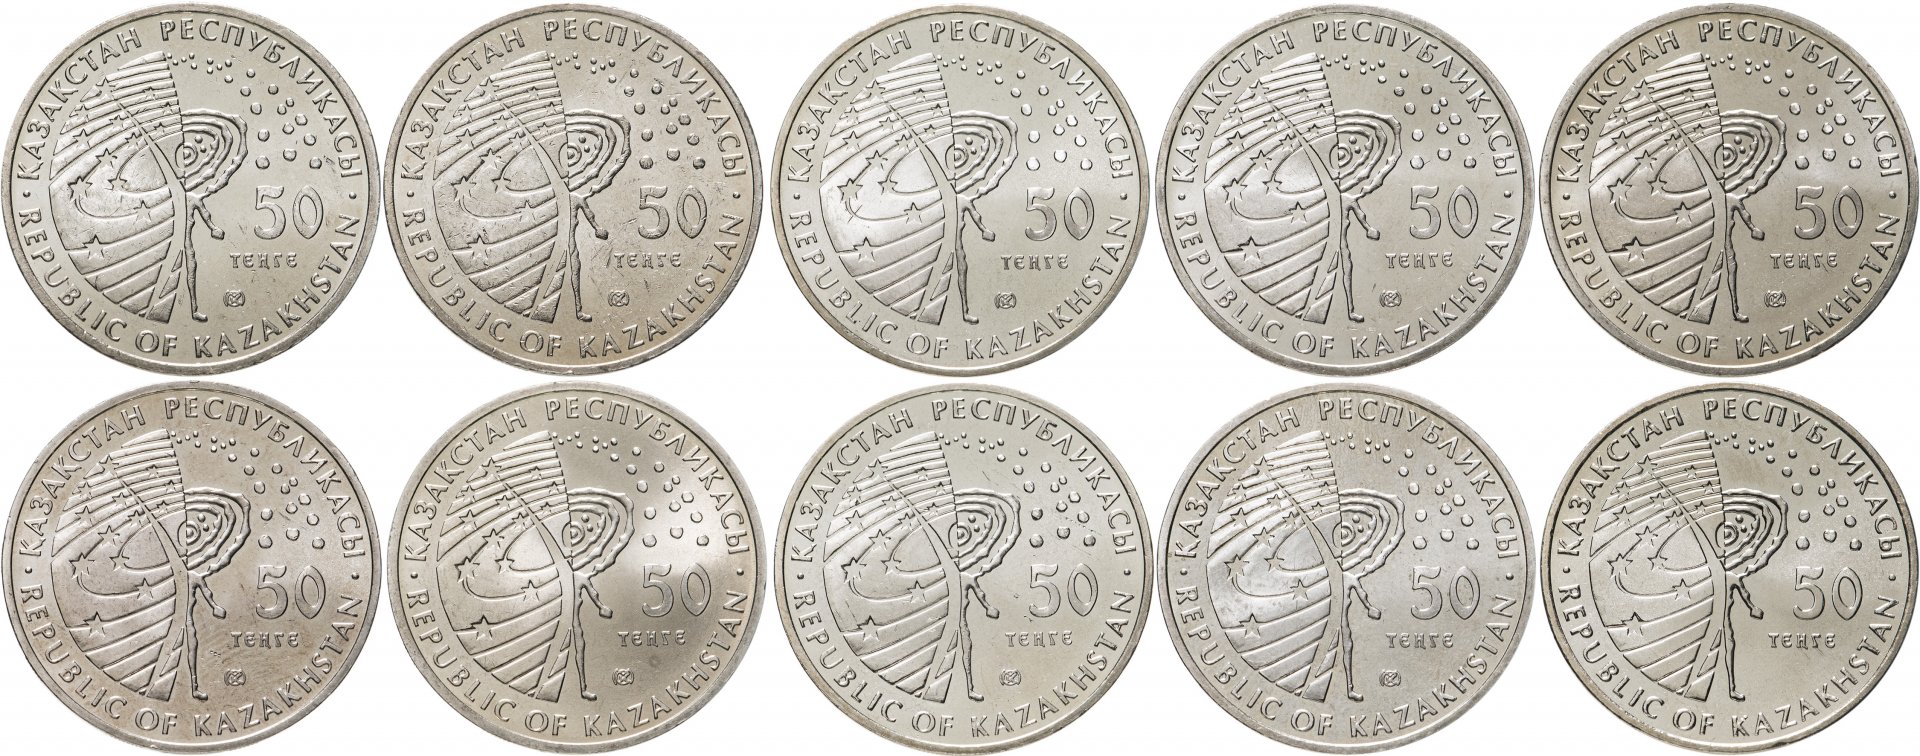 250 тенге в рублях на сегодня. Казахстан - 50 тенге (2006 г.). Монеты 50 тенге 2020 года. Казахстан набор монет Сакский стиль.